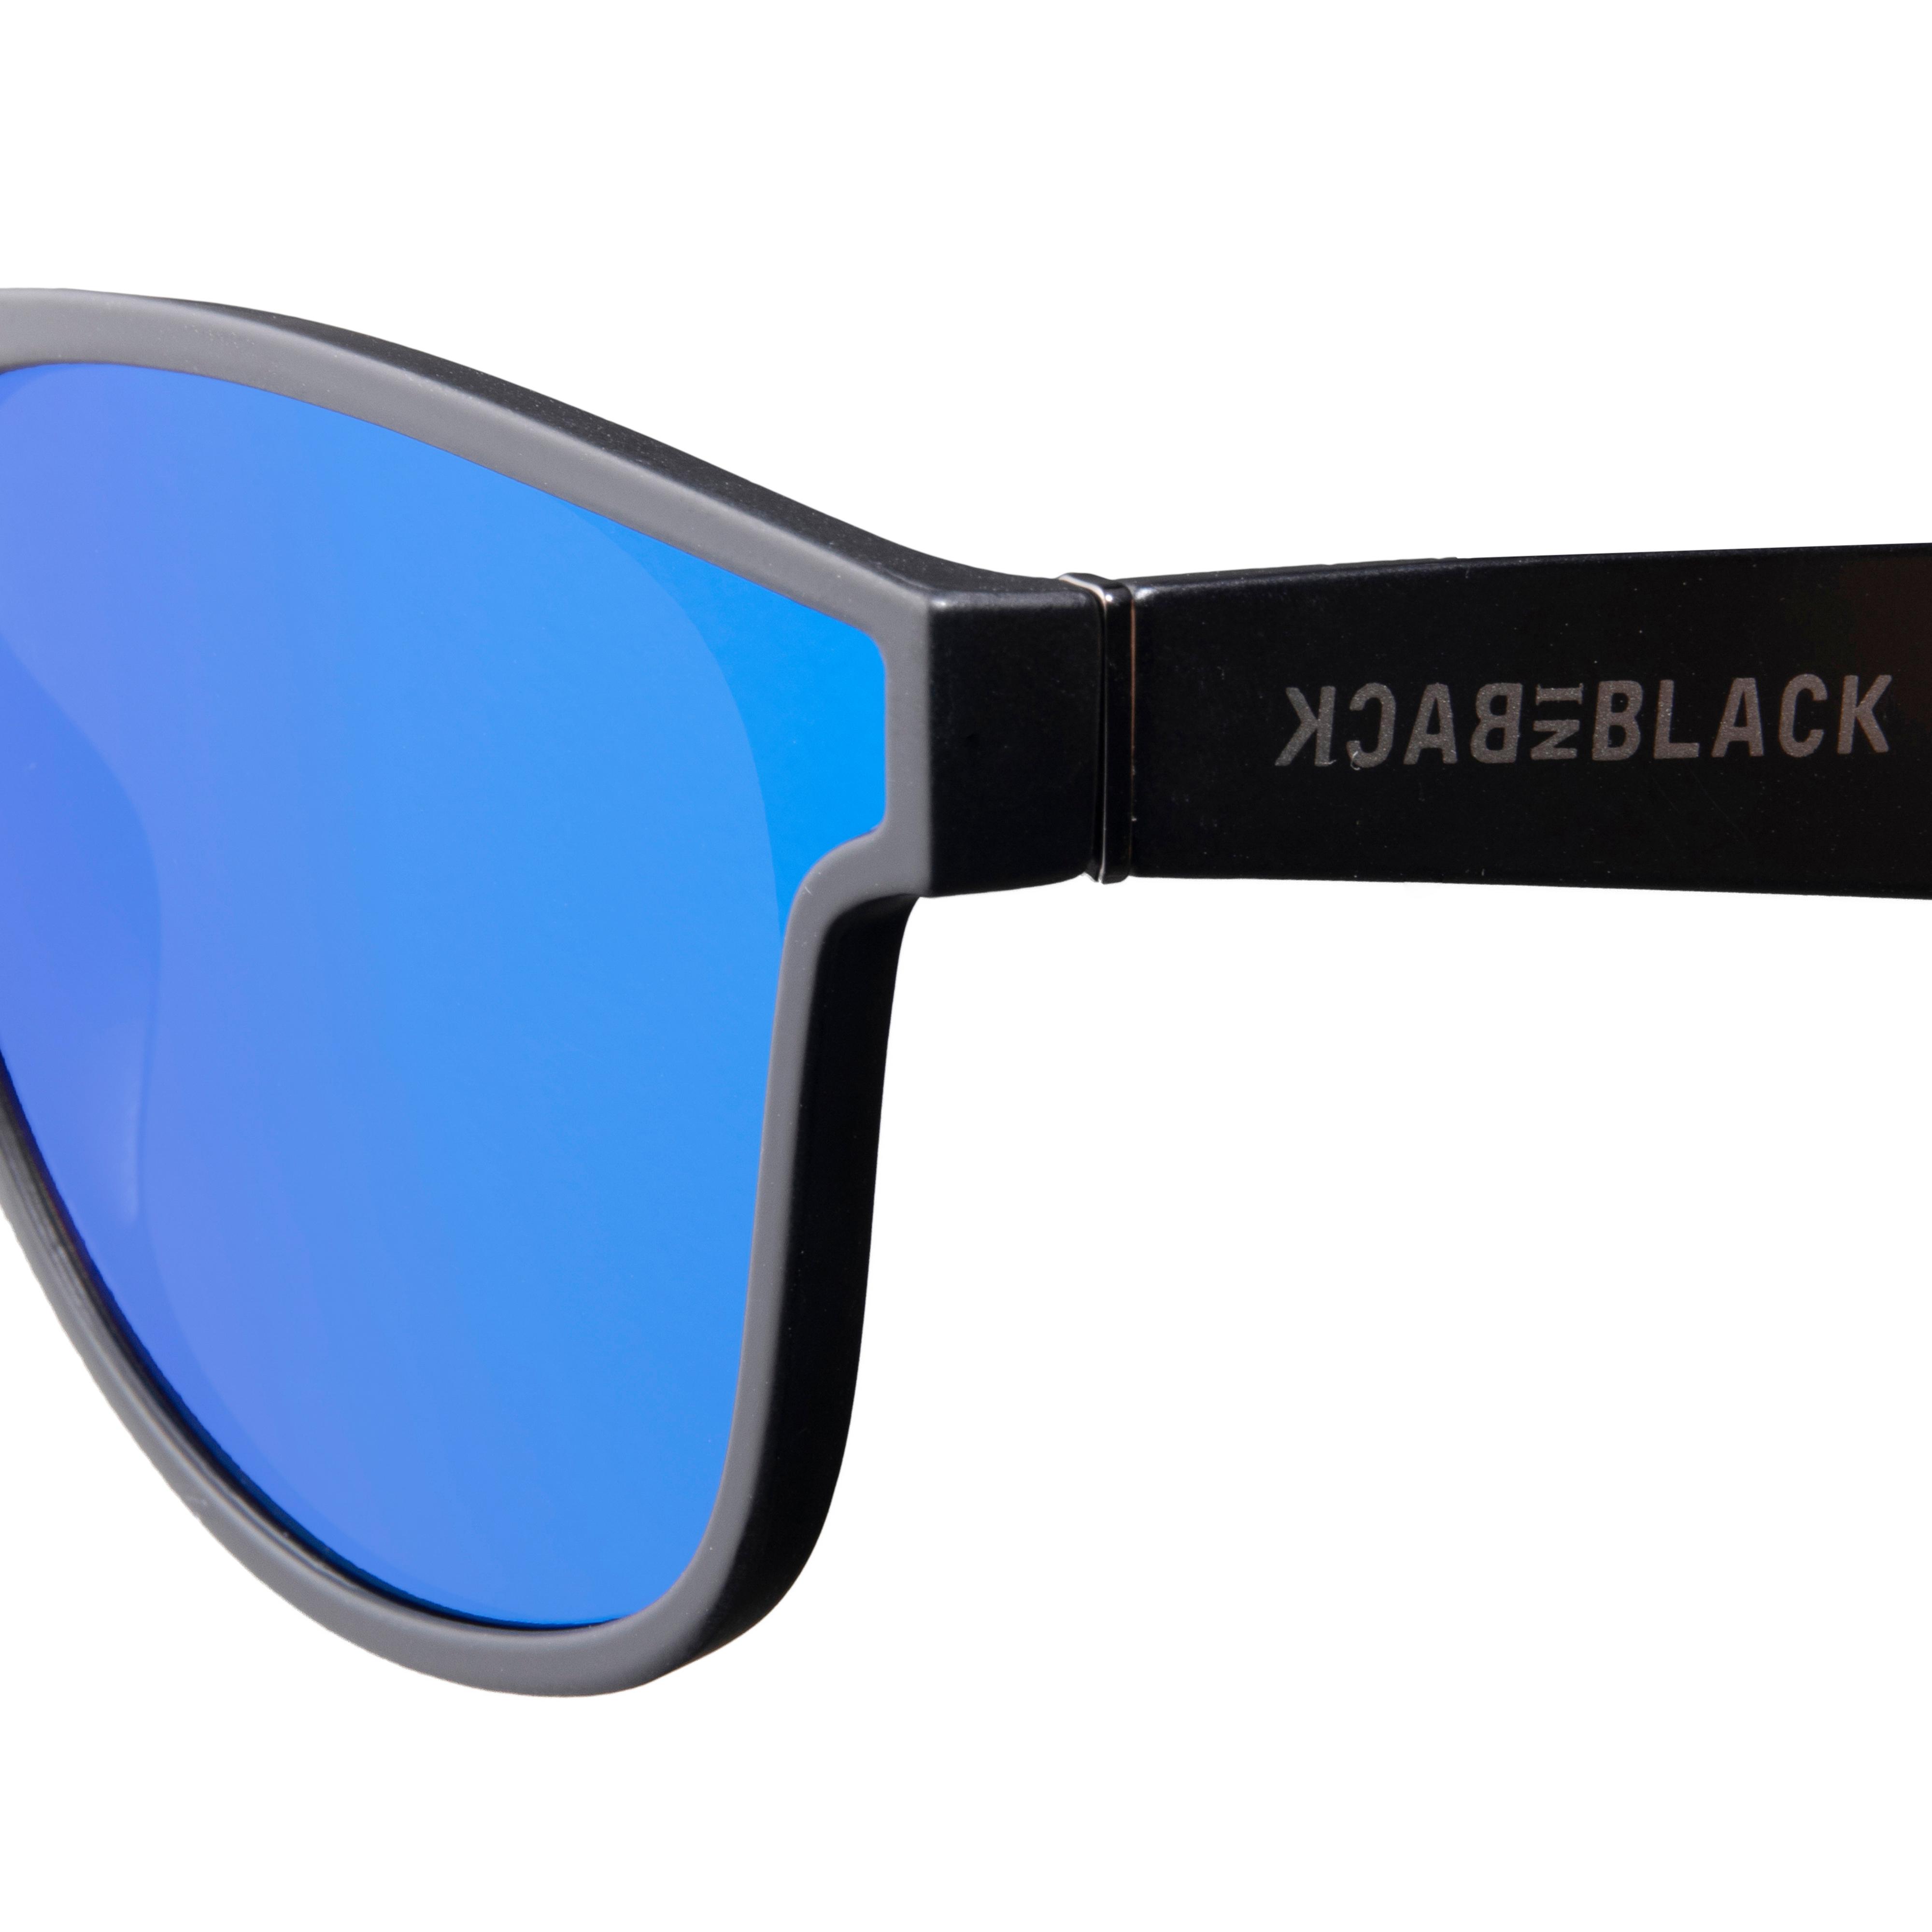 Back in Black Sonnenbrille SportScheck black-grey mirror Shop kaufen Online von im